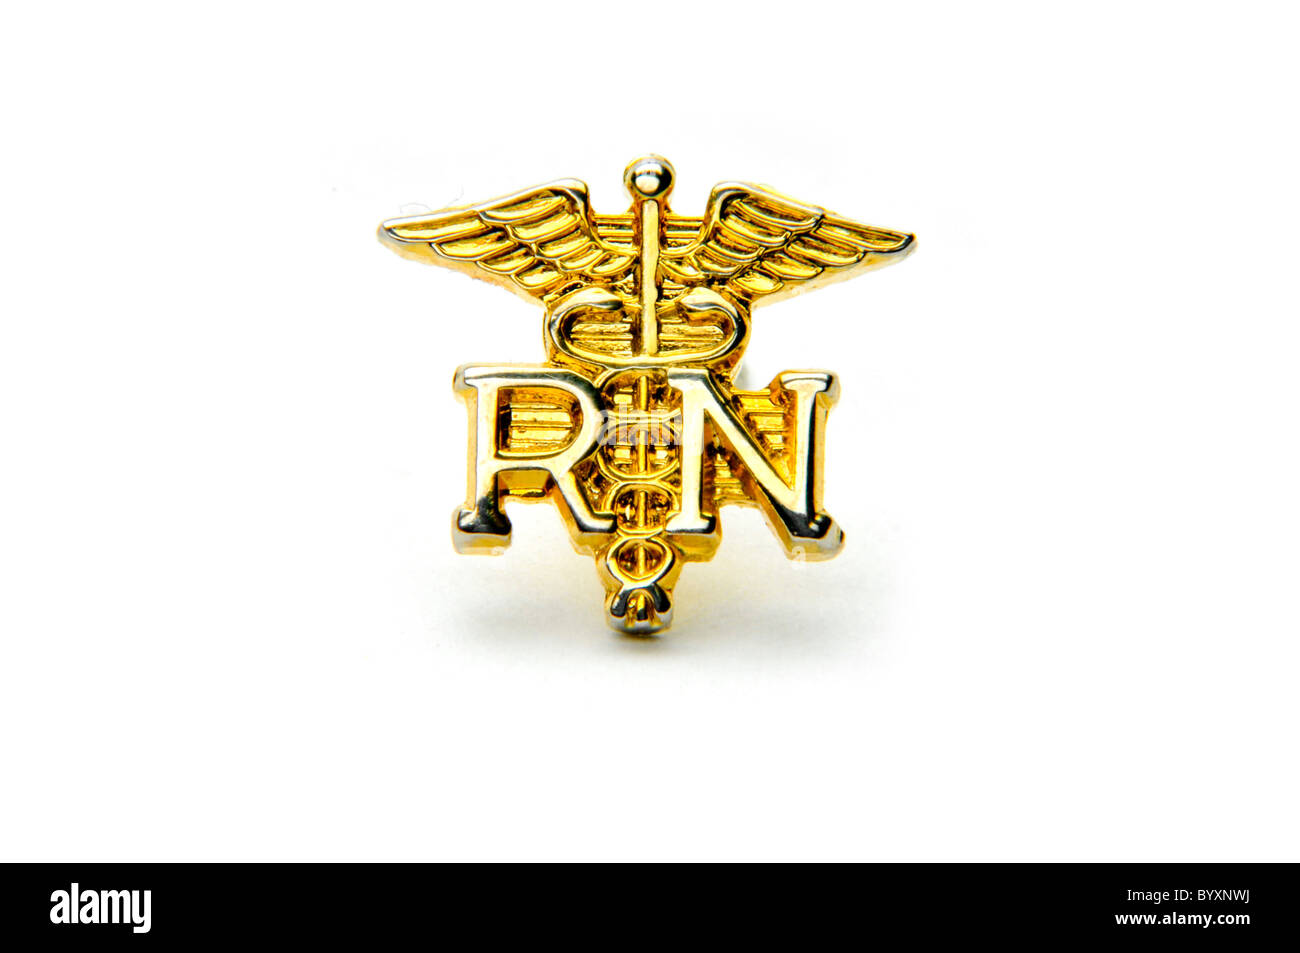 registered nurse lapel pin Stock Photo